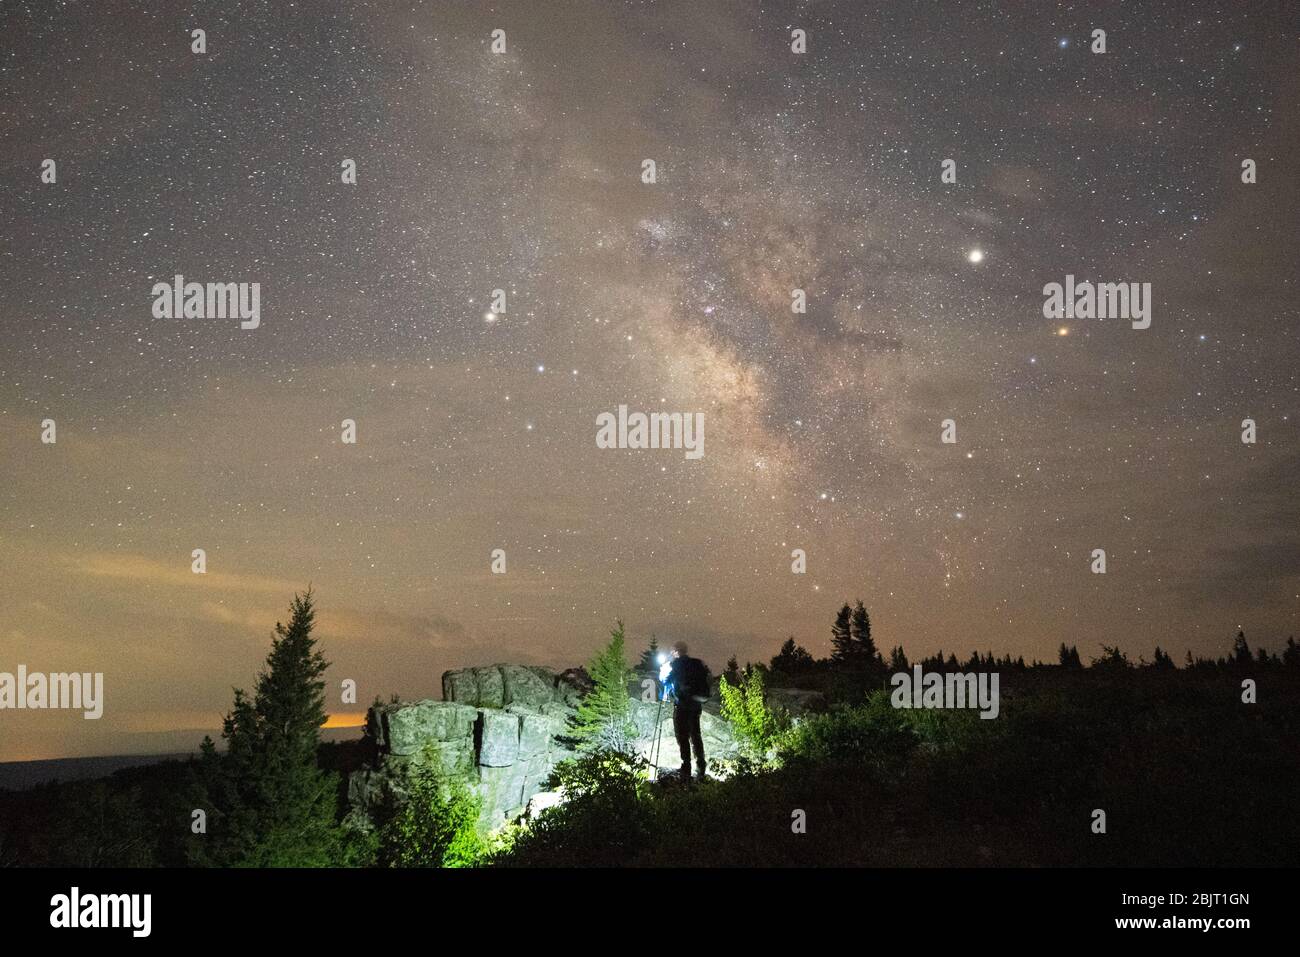 Un photographe de ciel nocturne installe l'appareil photo pour prendre un cliché de la manière laiteuse au-dessus du paysage rocheux sur Dolly Sods en Virginie occidentale. Banque D'Images